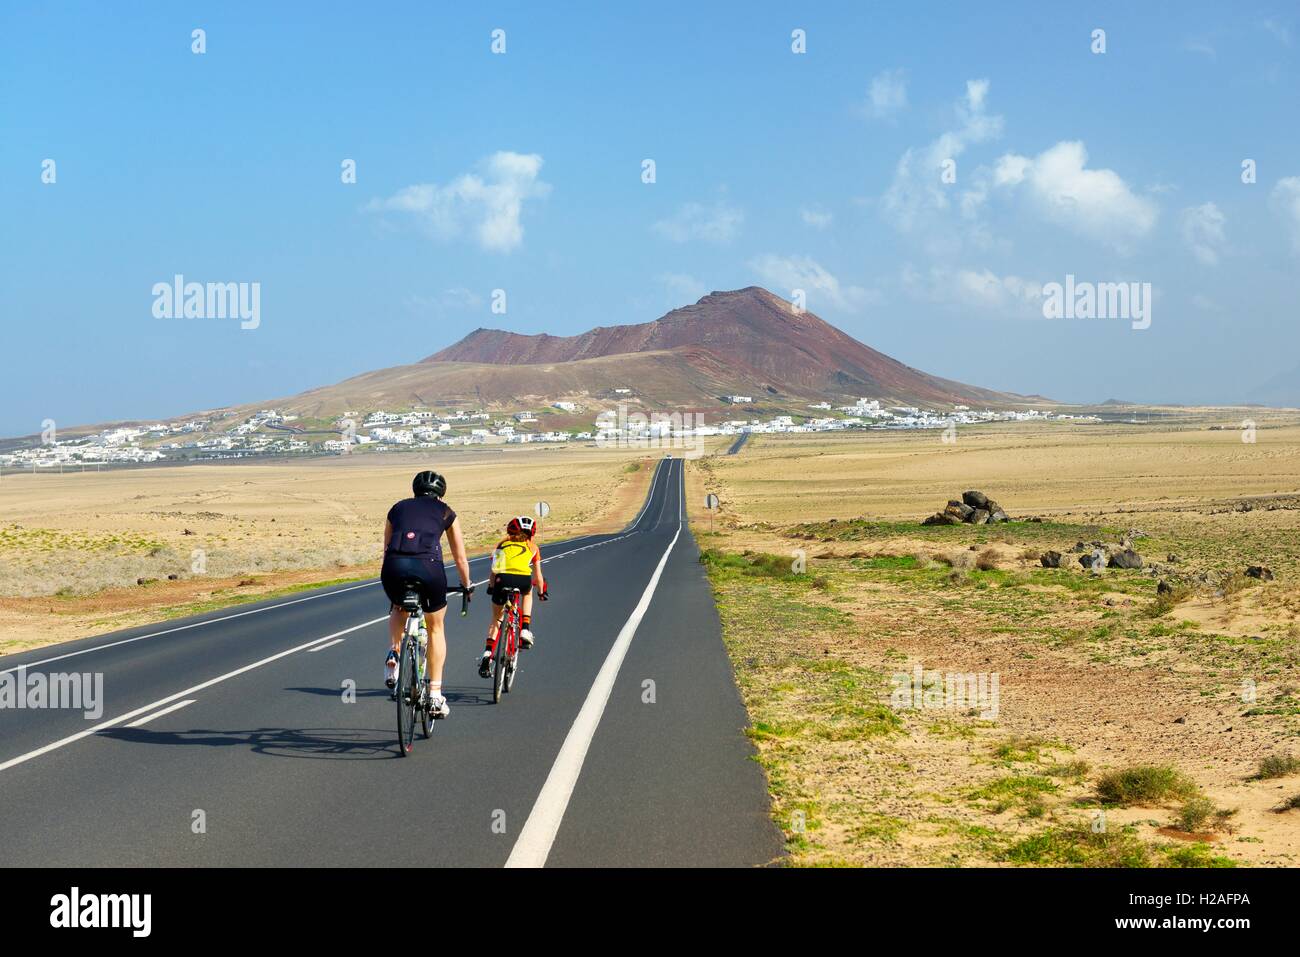 Escursioni in bicicletta sul LZ-401 road verso il cono vulcanico che si eleva al di sopra del villaggio di Soo. Teguise, Lanzarote, Isole Canarie, Spagna Foto Stock